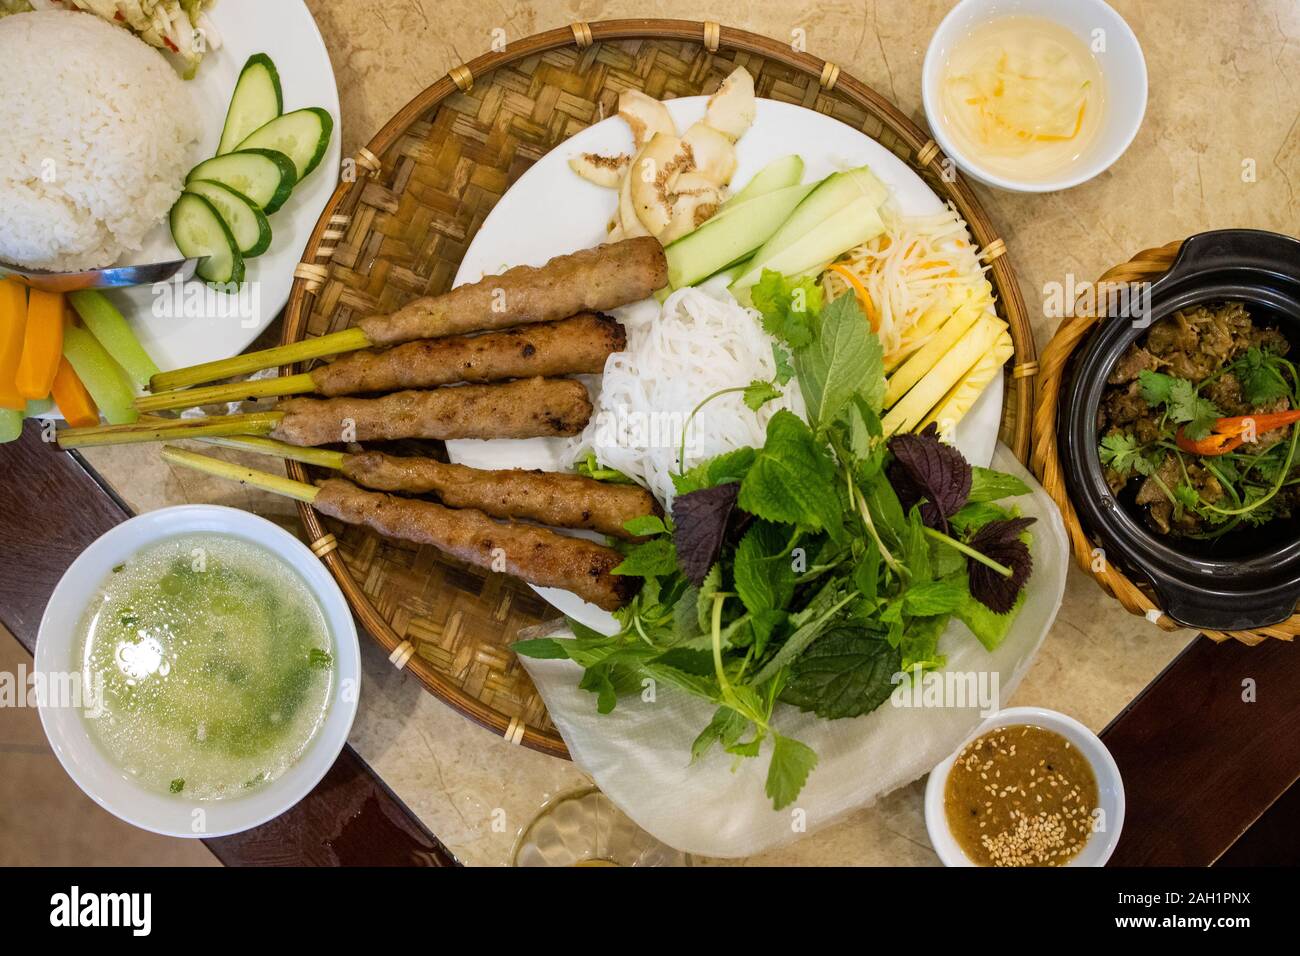 Nem de lui-Hue, porc grillé au sol sur des brochettes de citronnelle, Hanoi, Vietnam Banque D'Images